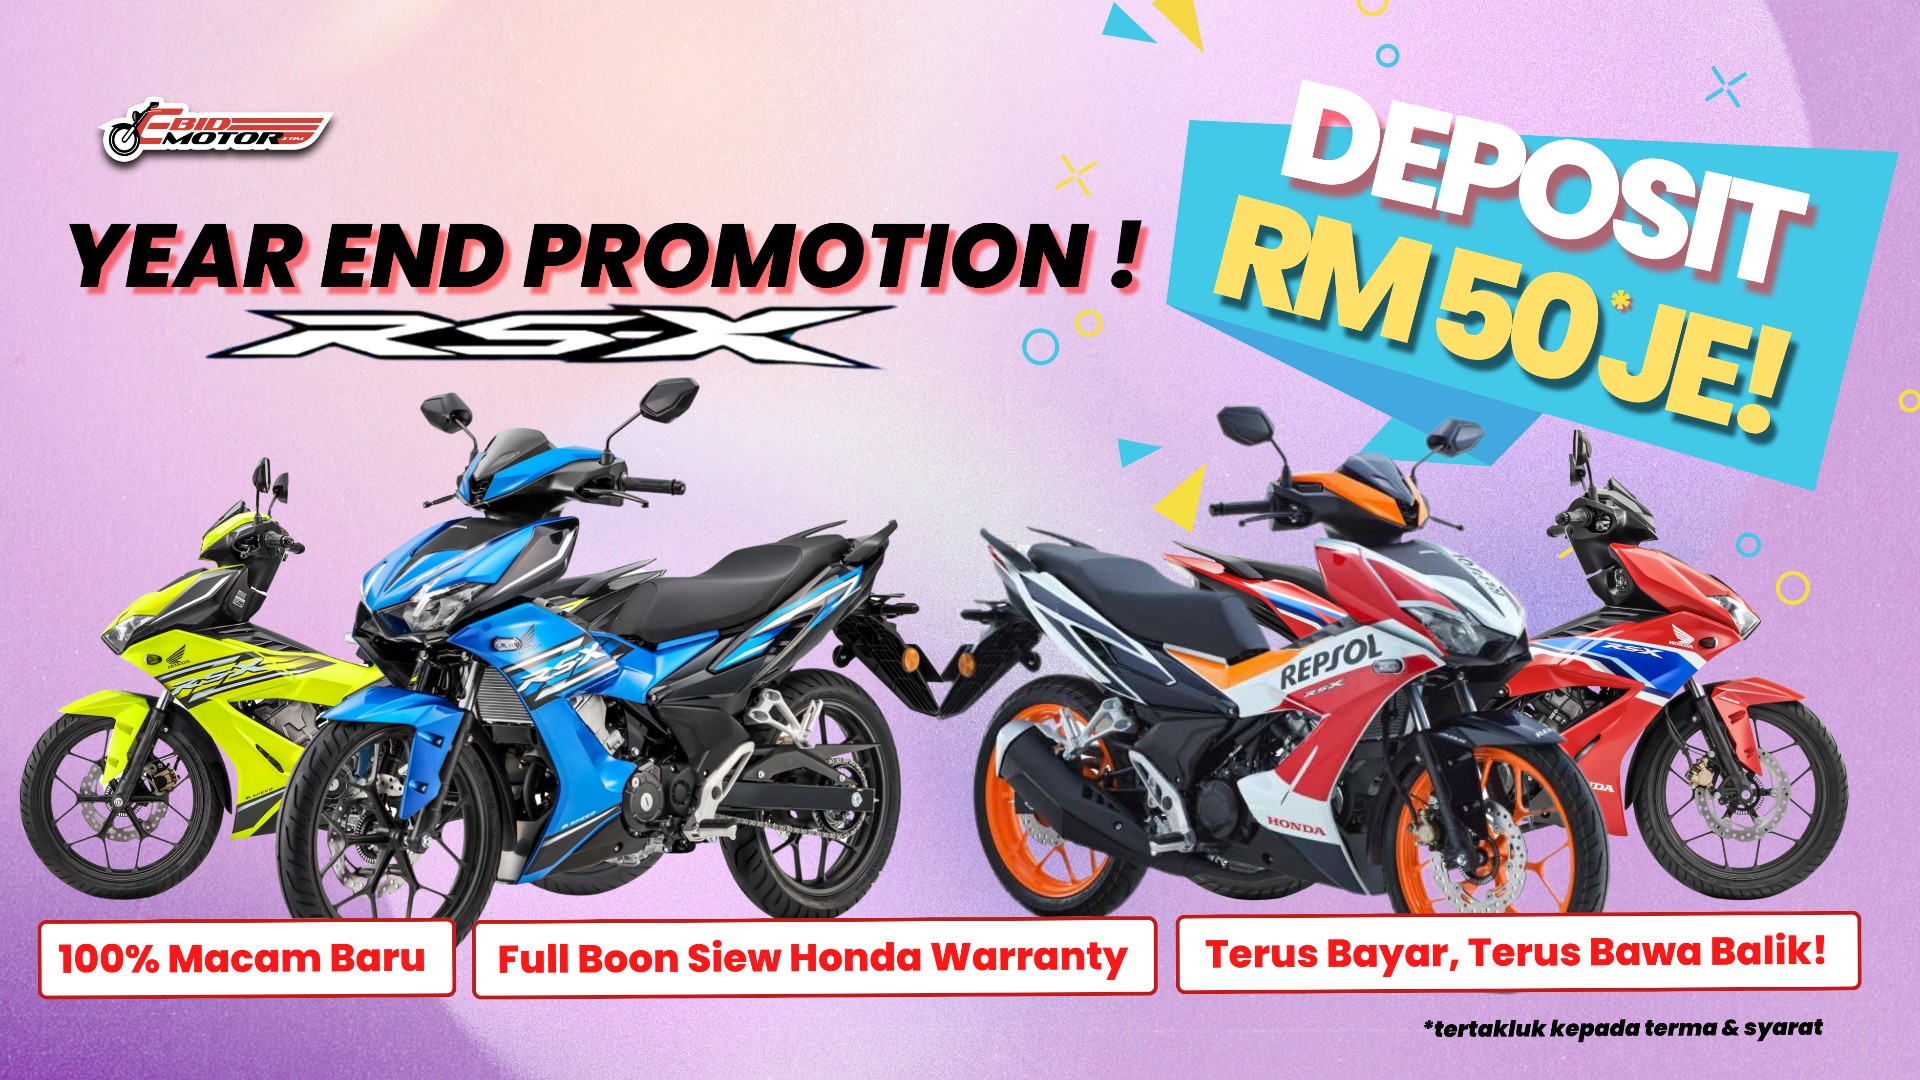 Ready Stock Honda RSX 100% LIKE NEW! Deposit RM50, Terus Bawa Balik!